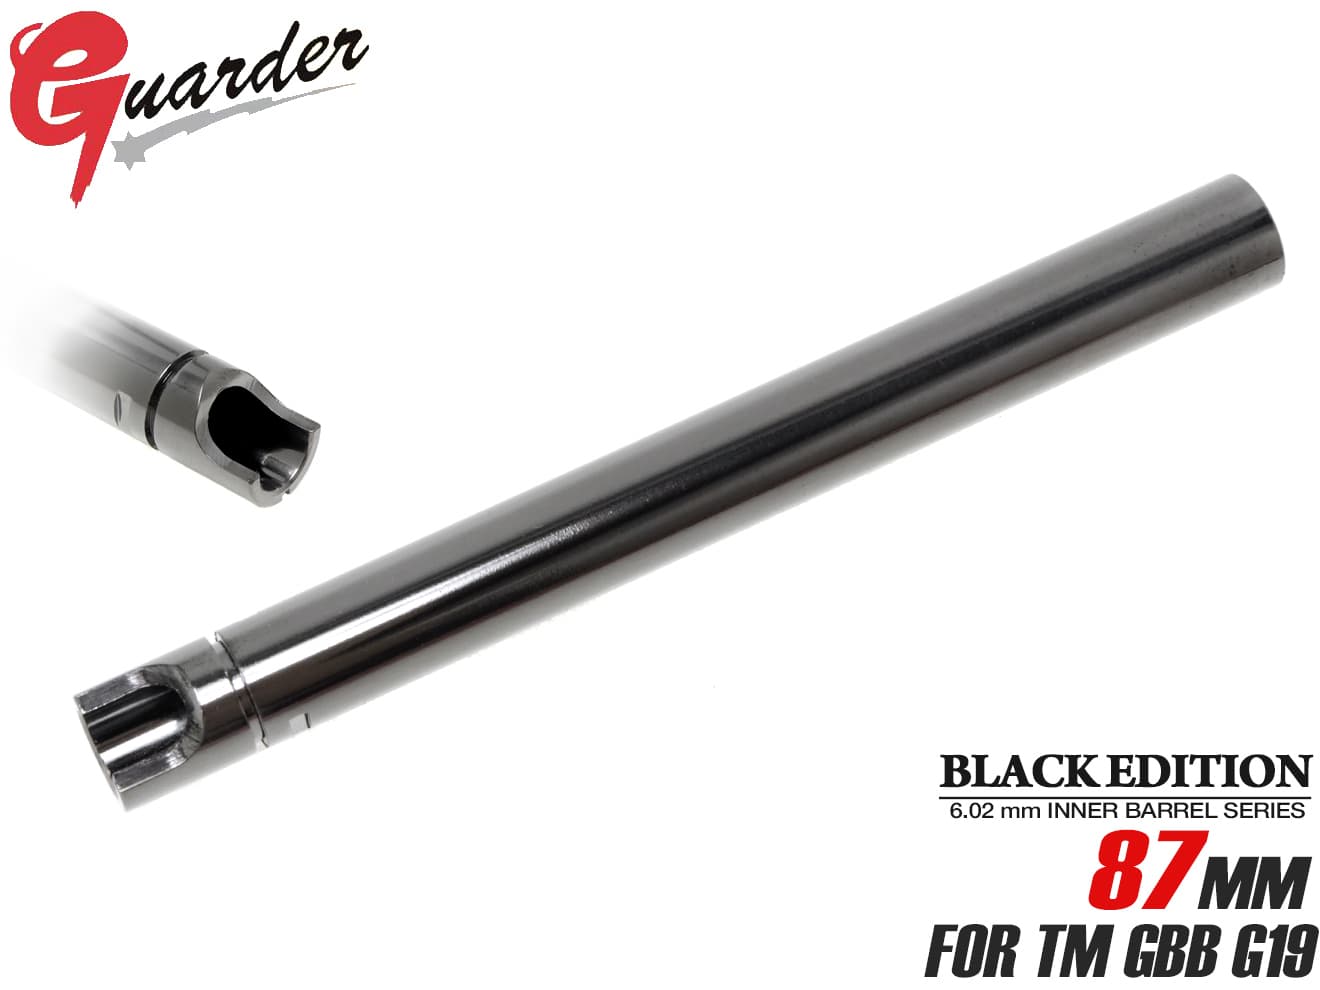 TN-29■GUARDER カスタムインナーバレル ブラックエディション for TM G19◆マルイ GBB GLOCK G19対応 精密タイトバレル イオンプレーティング